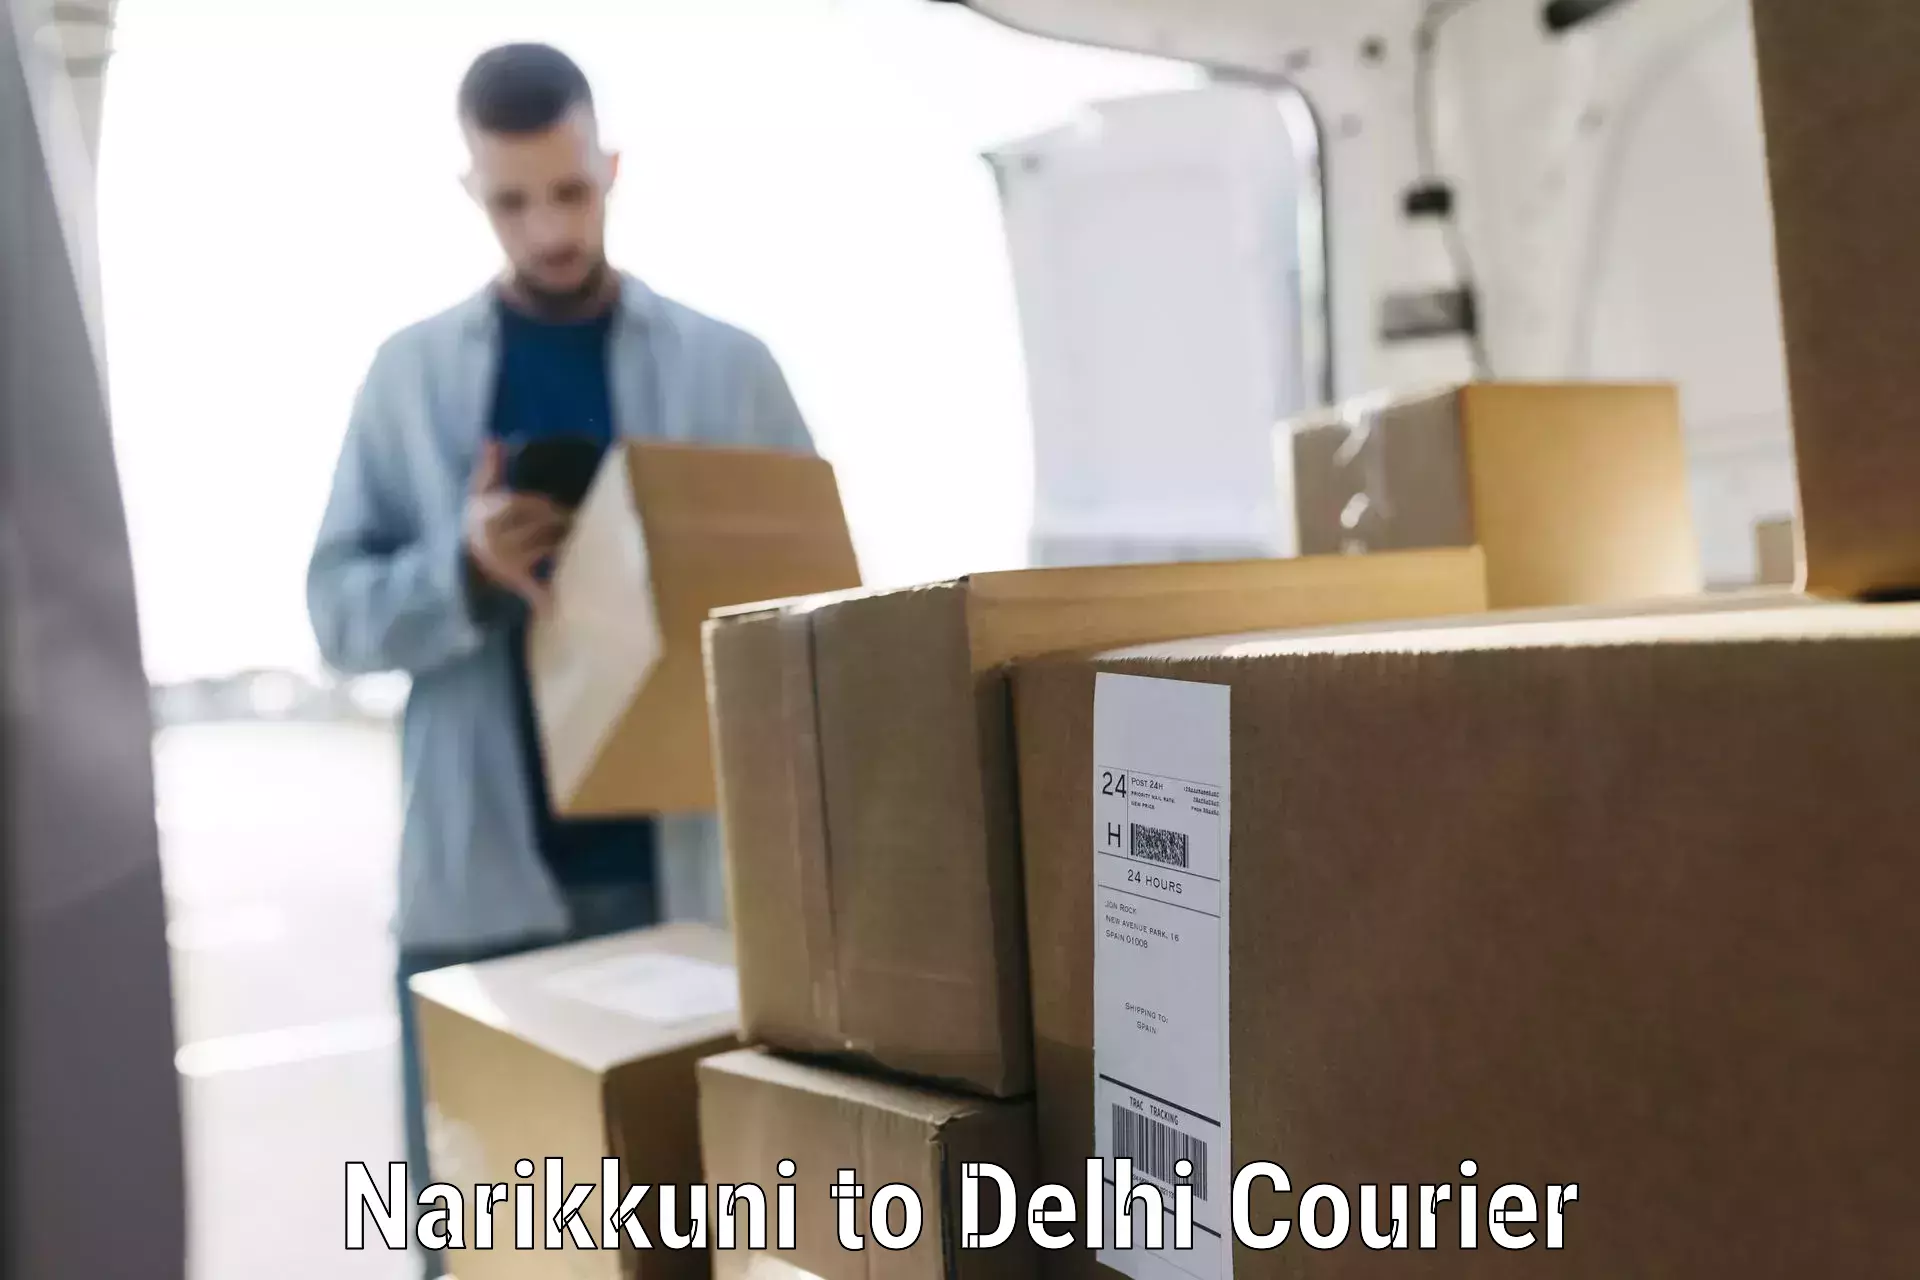 Unaccompanied luggage service Narikkuni to Delhi